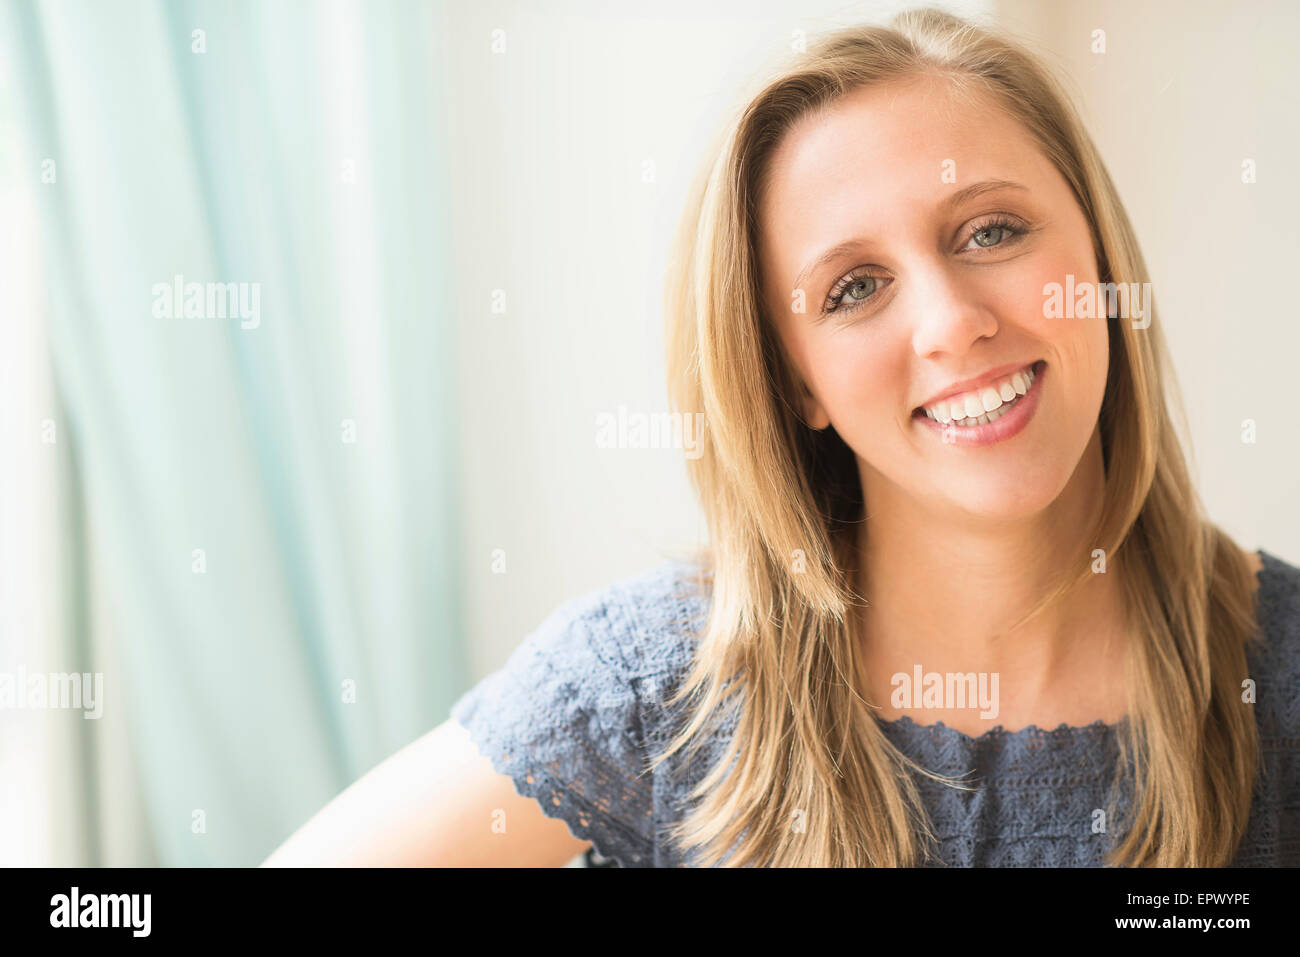 Portrait of woman smiling Banque D'Images